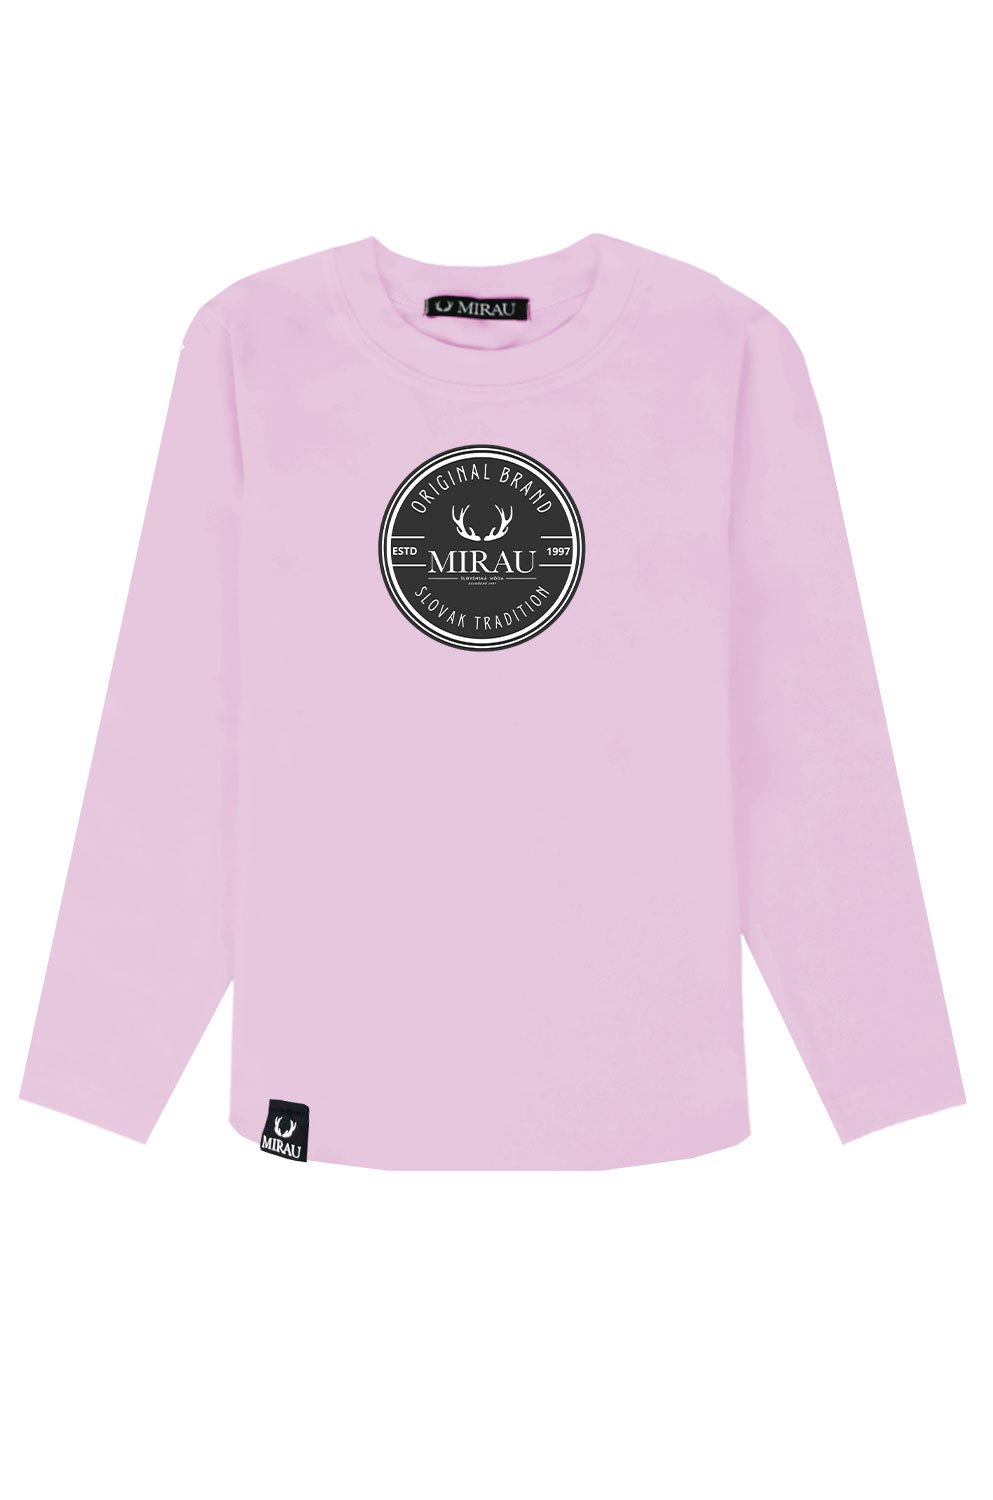 Dívčí tričko - Originál Brand